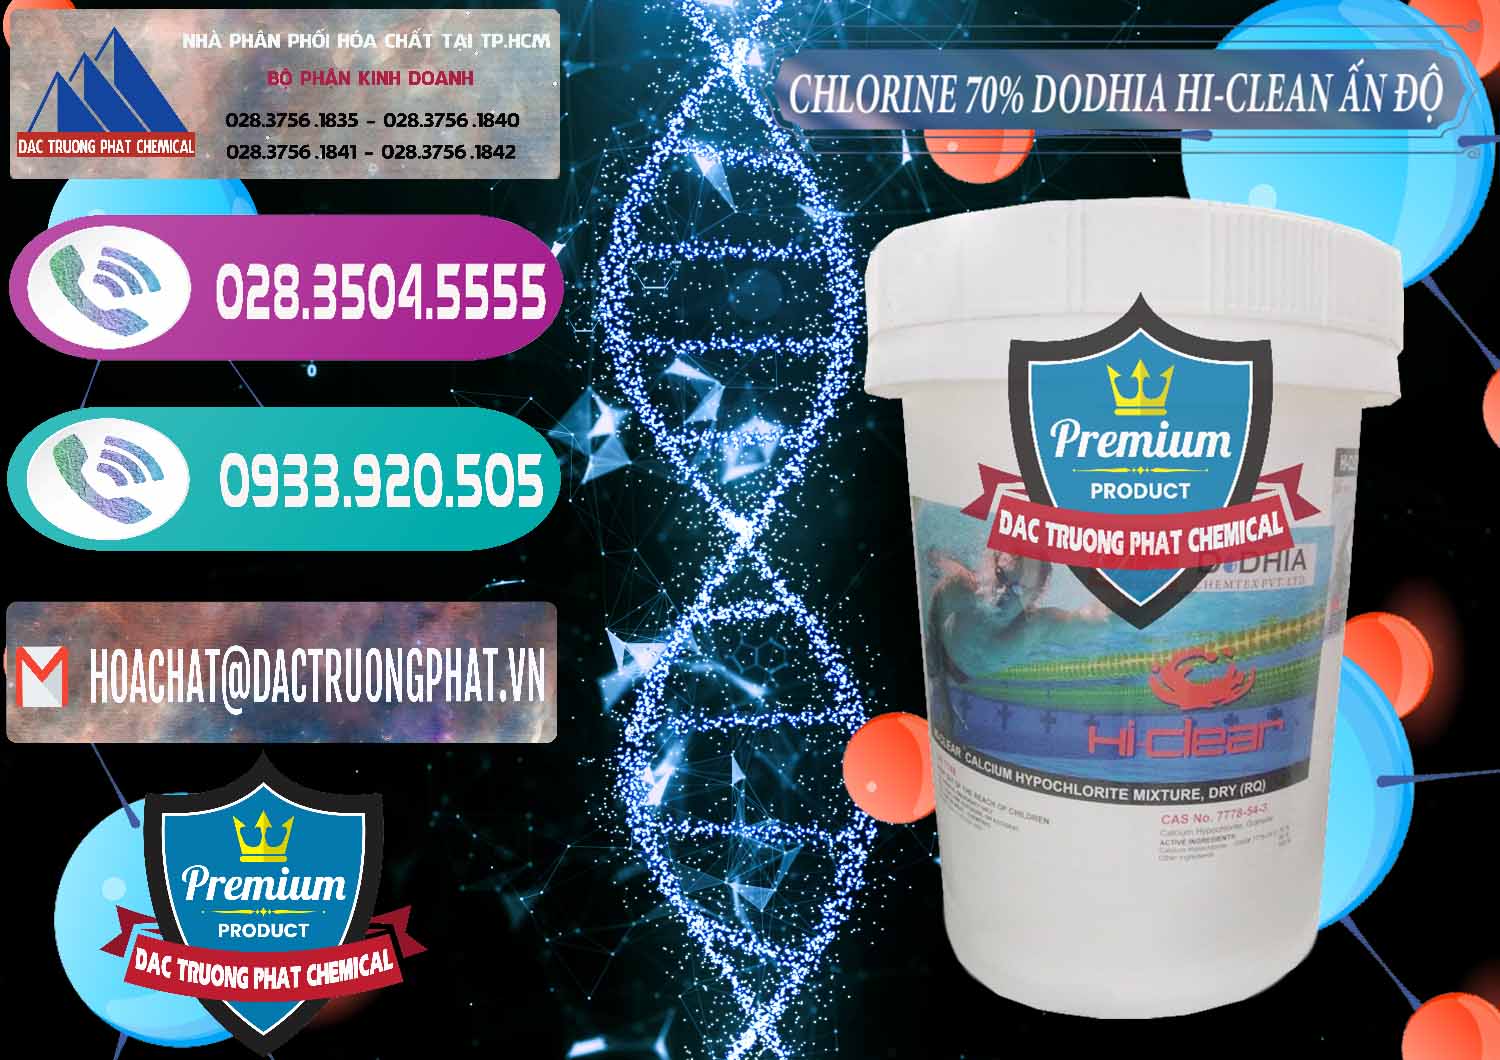 Phân phối & bán Chlorine – Clorin 70% Dodhia Hi-Clean Ấn Độ India - 0214 - Công ty kinh doanh và phân phối hóa chất tại TP.HCM - hoachatxulynuoc.com